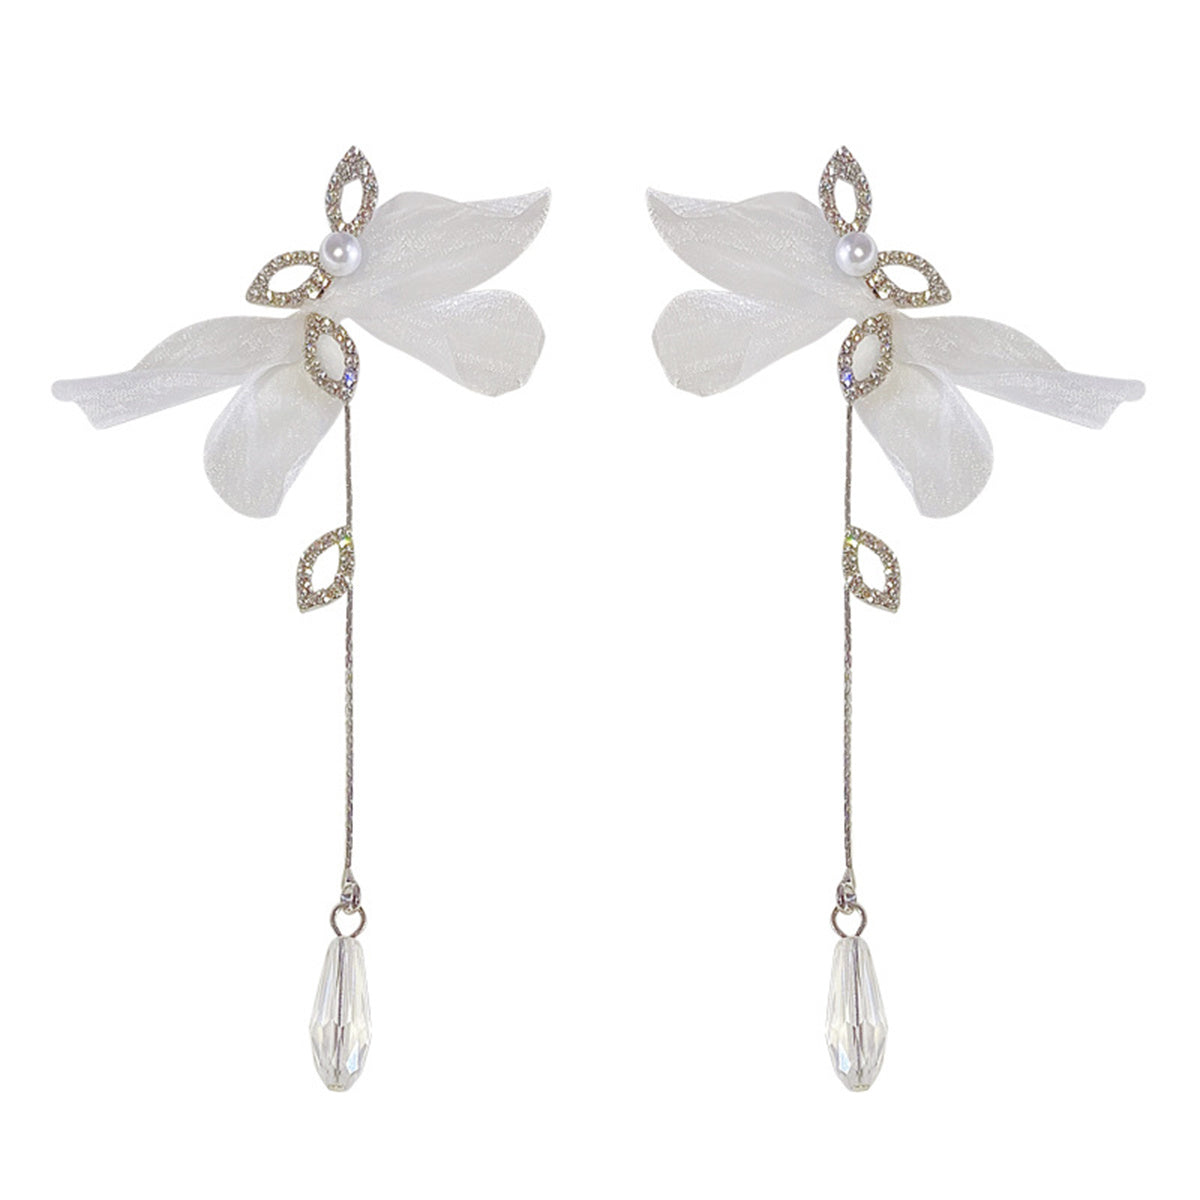 Butterfly Wing Earrings, Chiffon Fabric Earrings Flower Petals Long Earrings